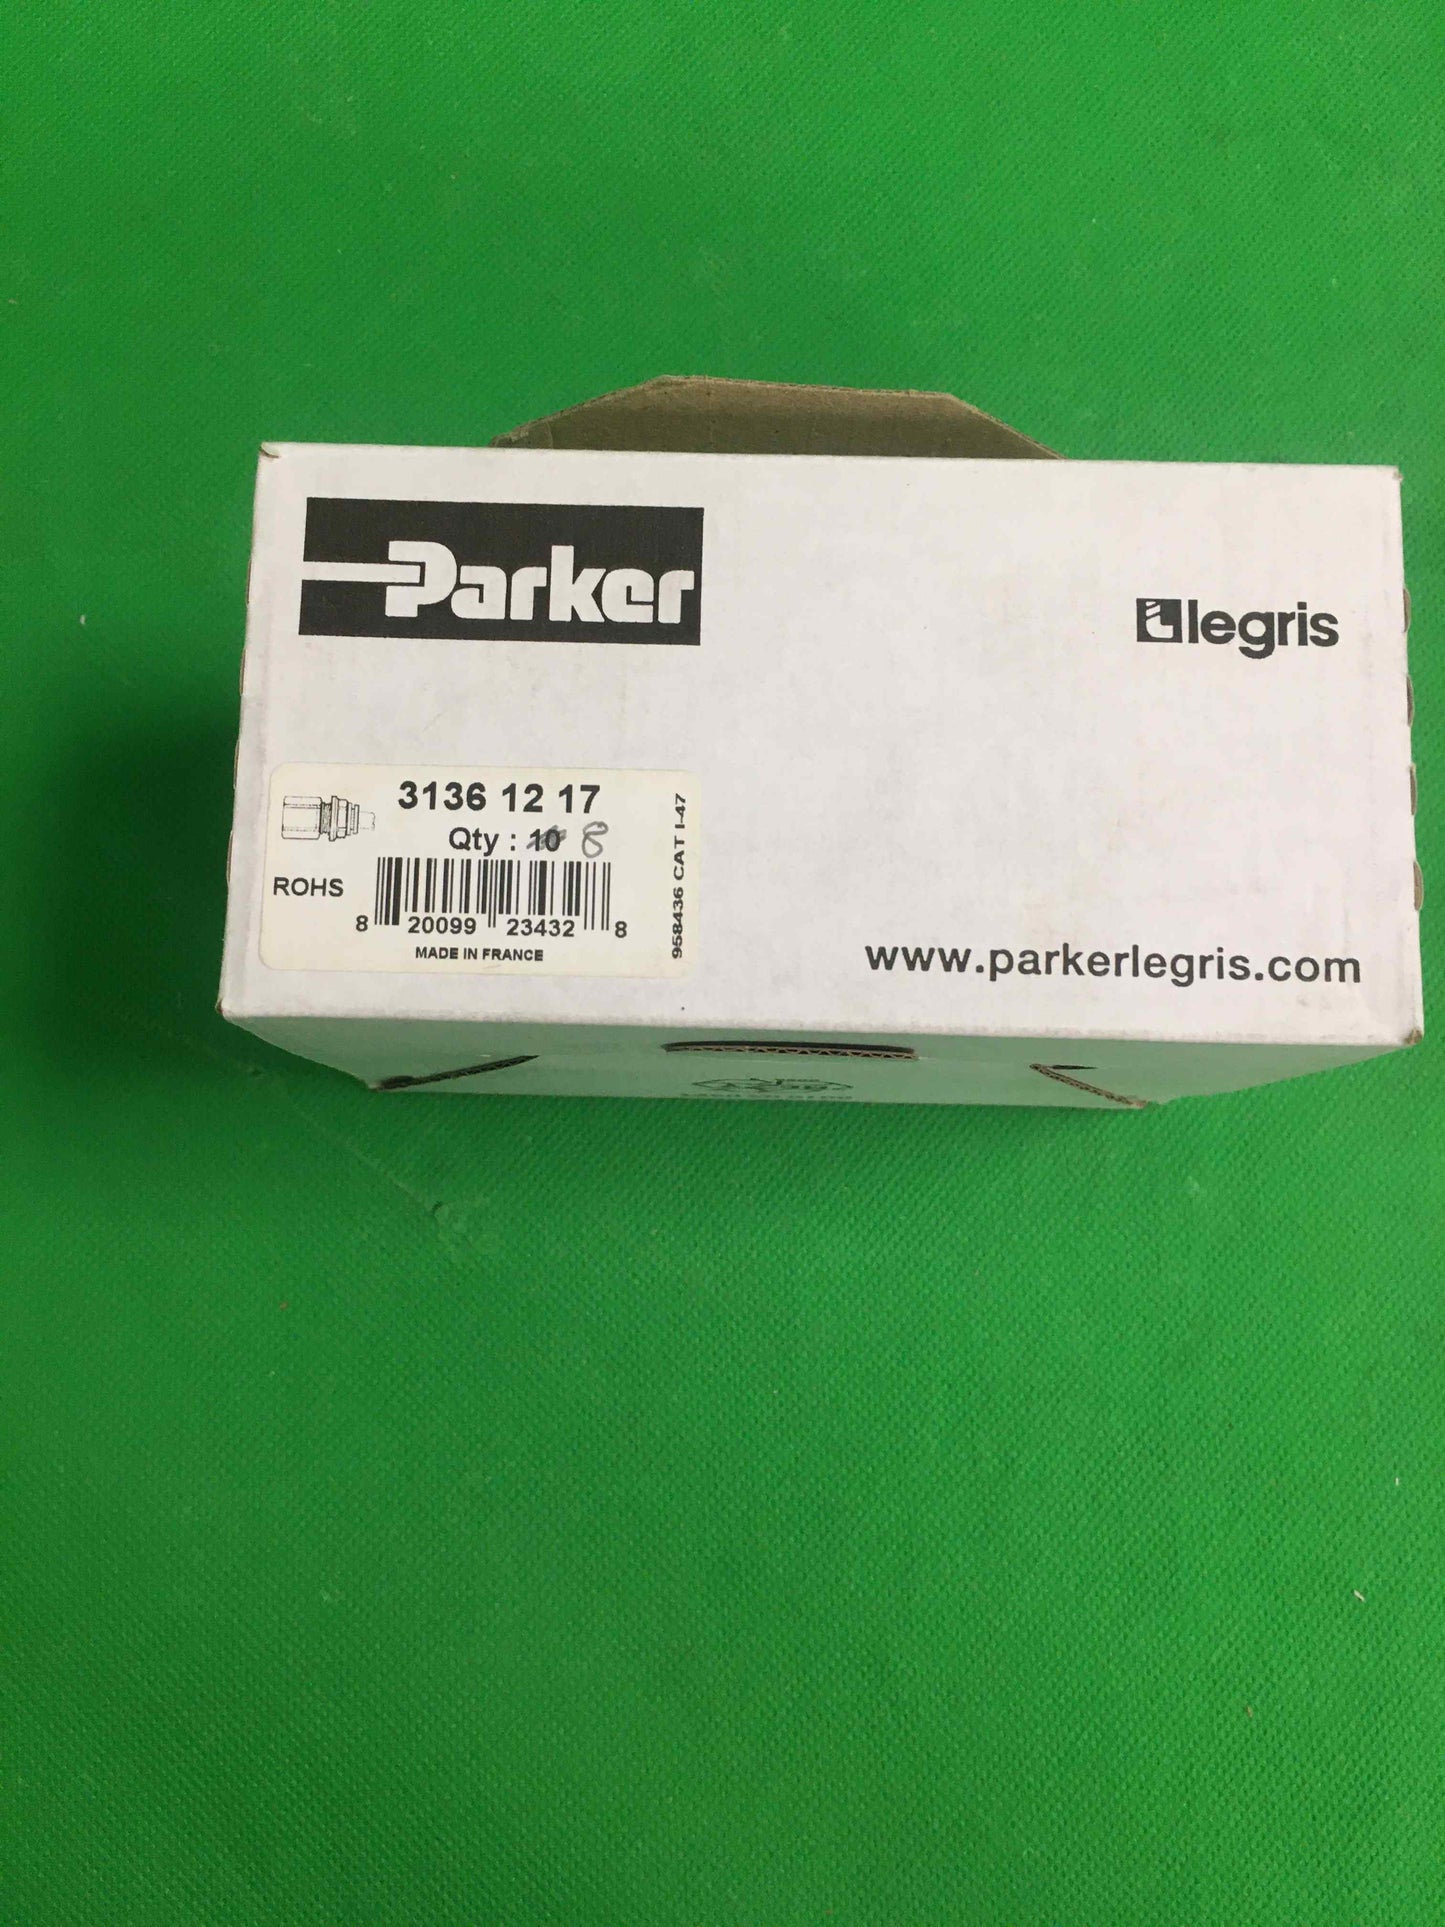 PARKER LEGRIS-3136 12 17/31361217